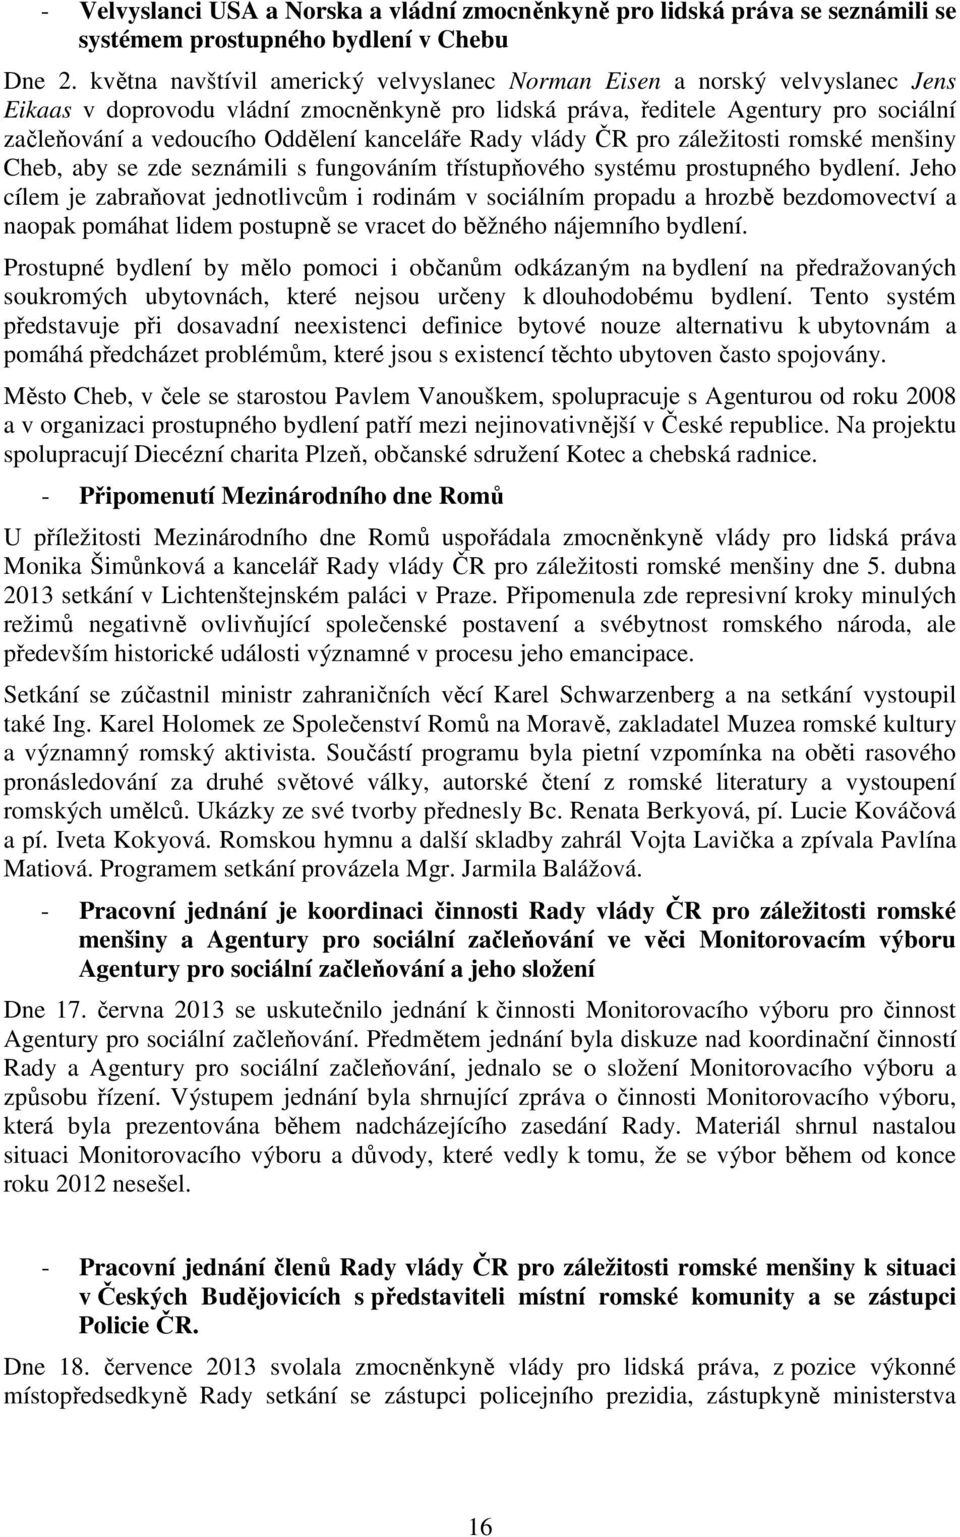 kanceláře Rady vlády ČR pro záležitosti romské menšiny Cheb, aby se zde seznámili s fungováním třístupňového systému prostupného bydlení.